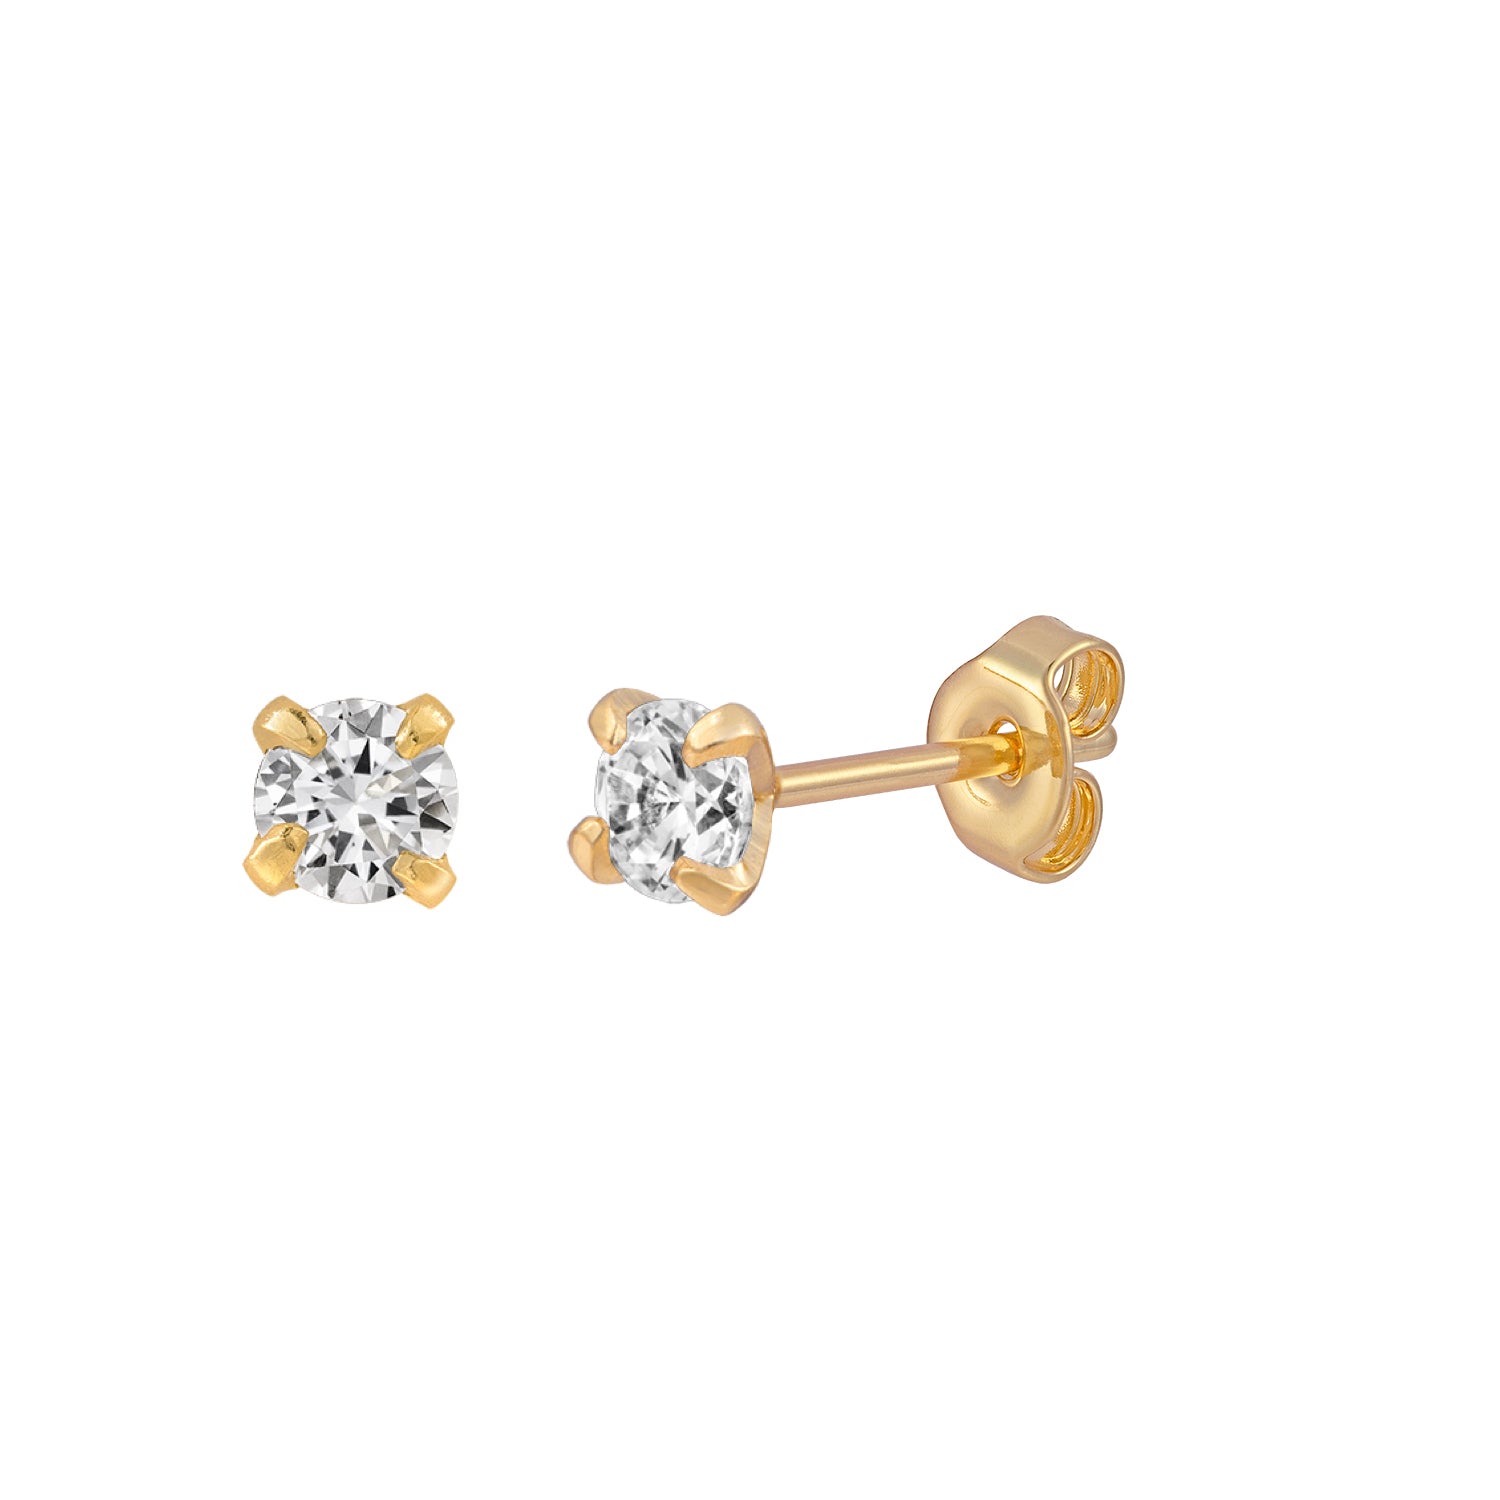 J&CO Jewellery 14K Solid Gold Ball Stud Earrings 3mm